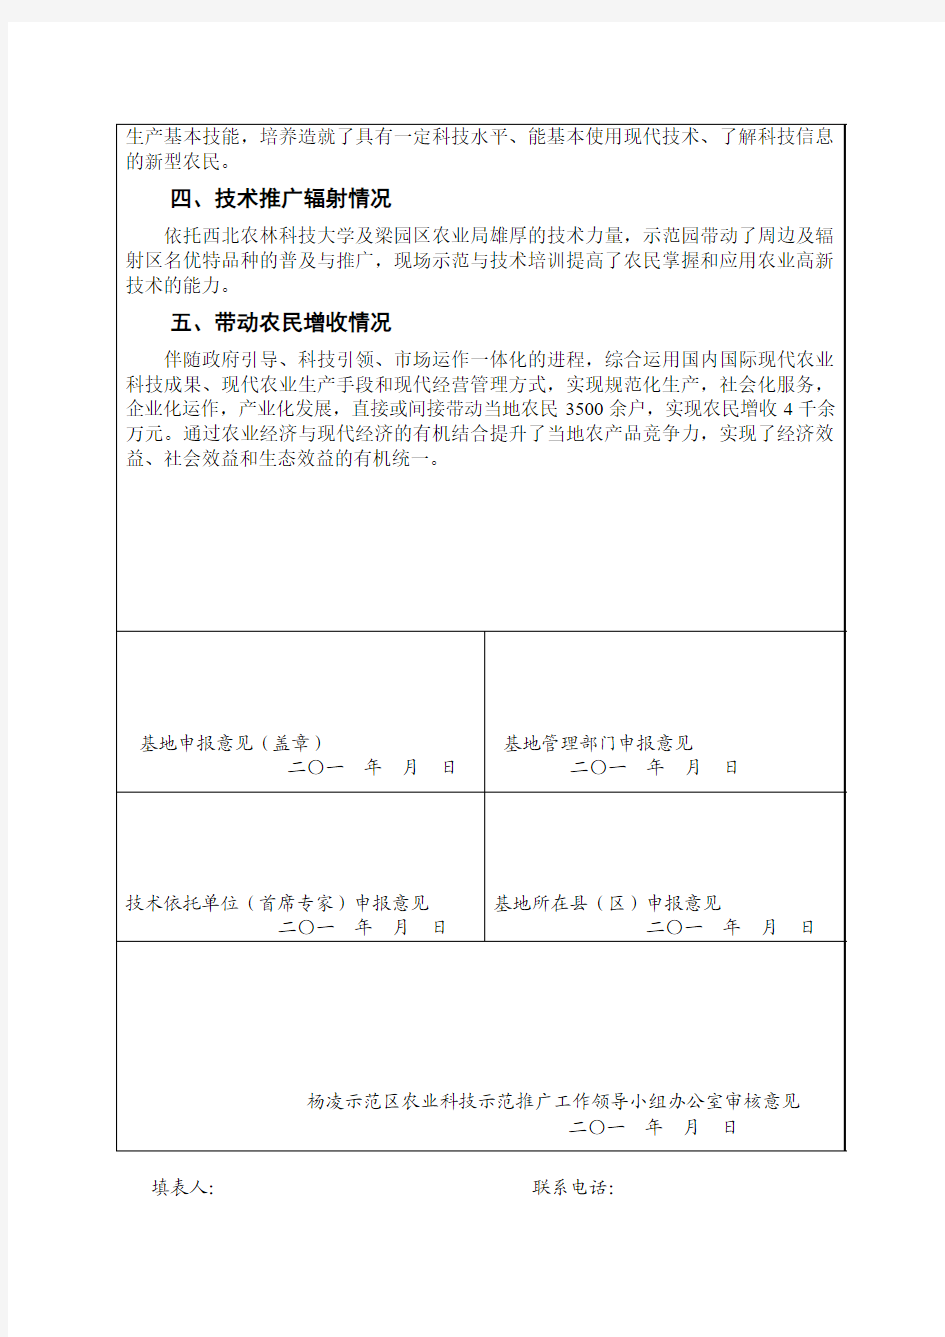 杨凌示范区农业科技示范推广基地申报表1.doc123